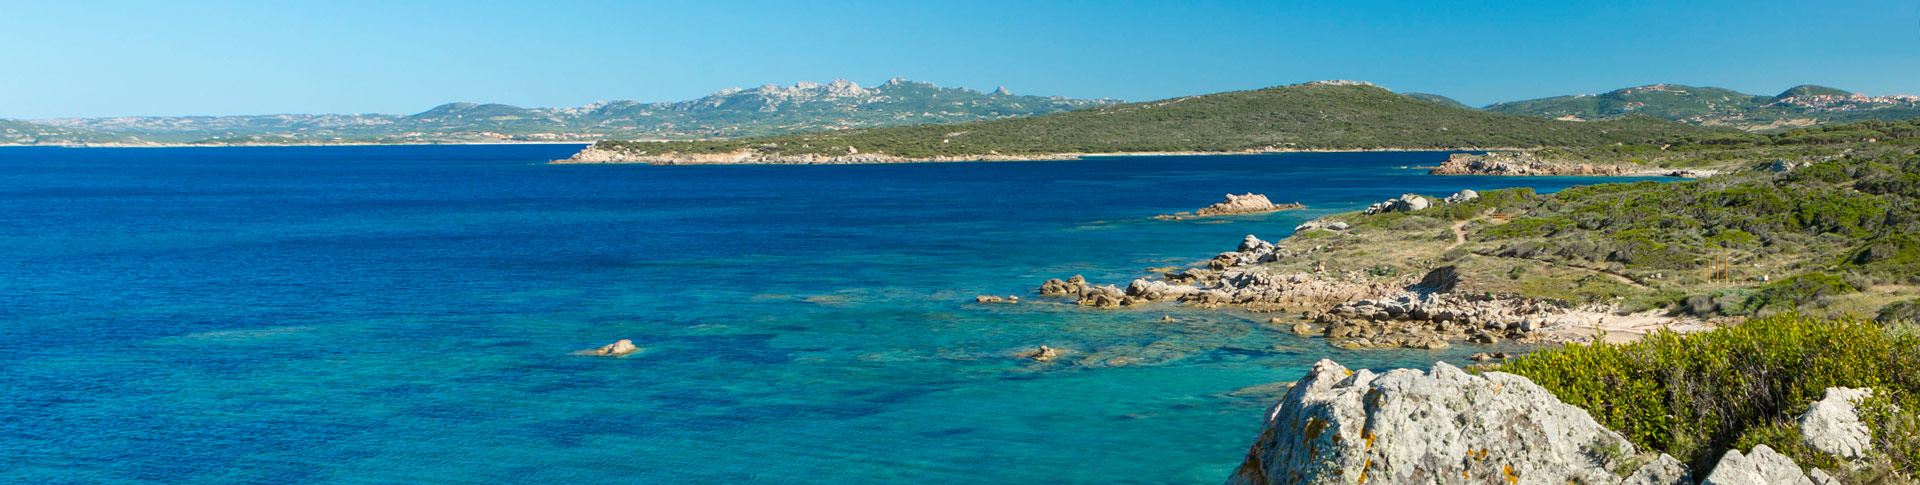 Resort Valle dell’Erica: il miglior hotel sul mare della Sardegna